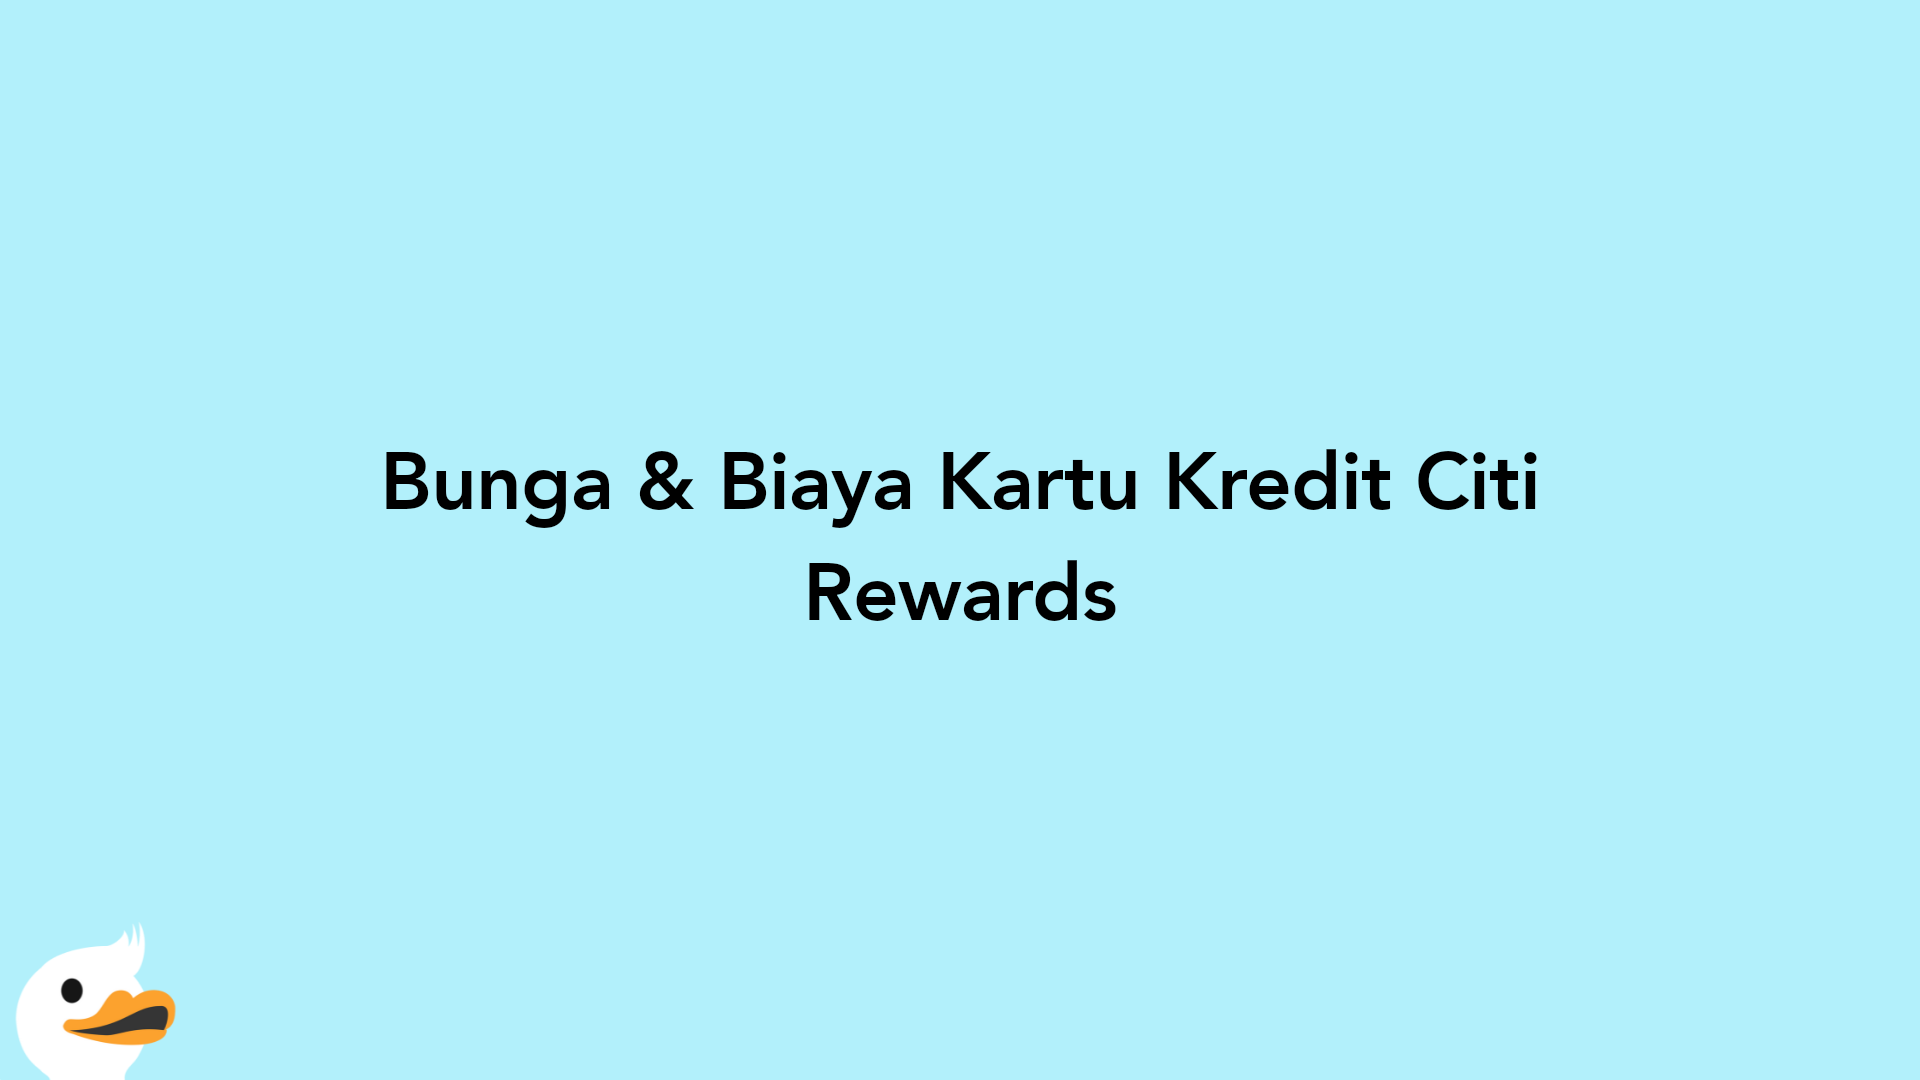 Bunga & Biaya Kartu Kredit Citi Rewards